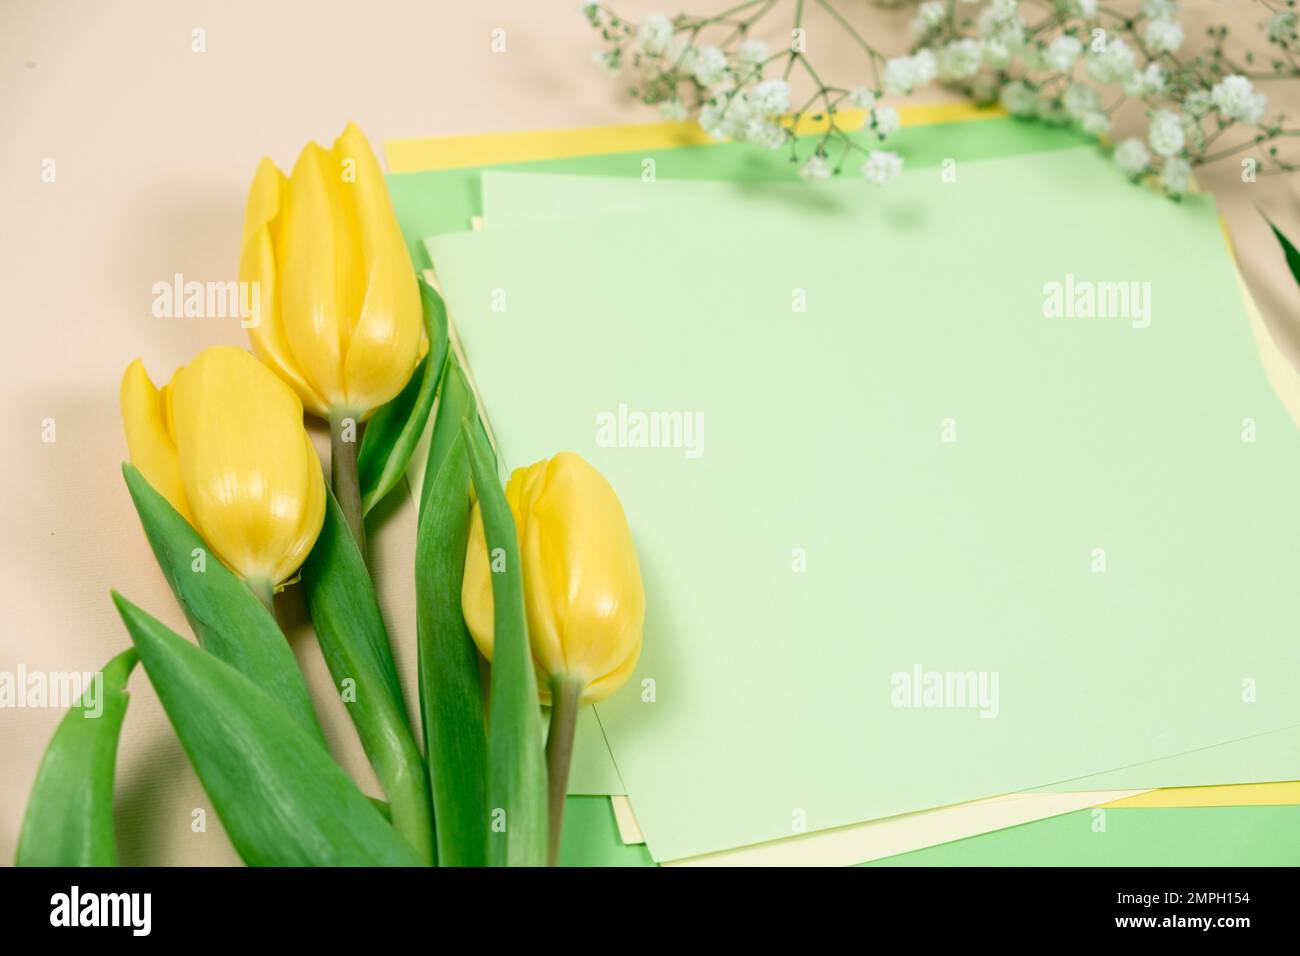 Maquette de printemps - tulipes jaunes et un endroit pour le texte. Bonjour mars, avril, mai, bonne journée des femmes Banque D'Images